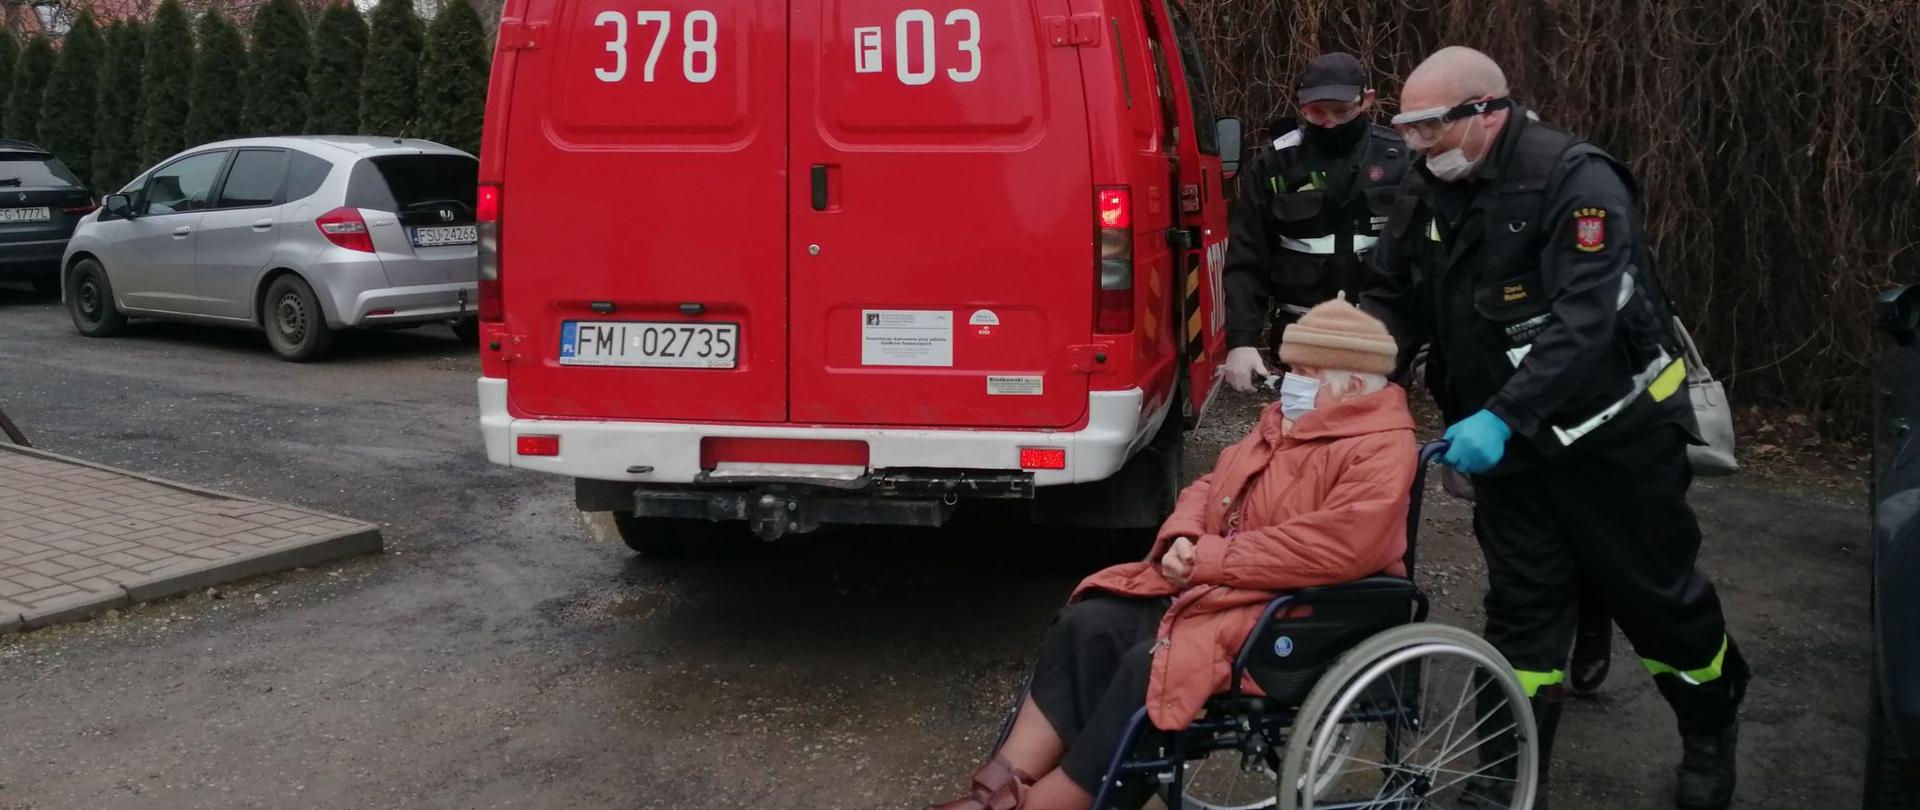 Zdjęcie przedstawia strażaka pchającego wózek inwalidzki z seniorką w miejscowości Lubniewice w dniu 27 stycznia 2021r. W tle czerwony samochód strażacki.